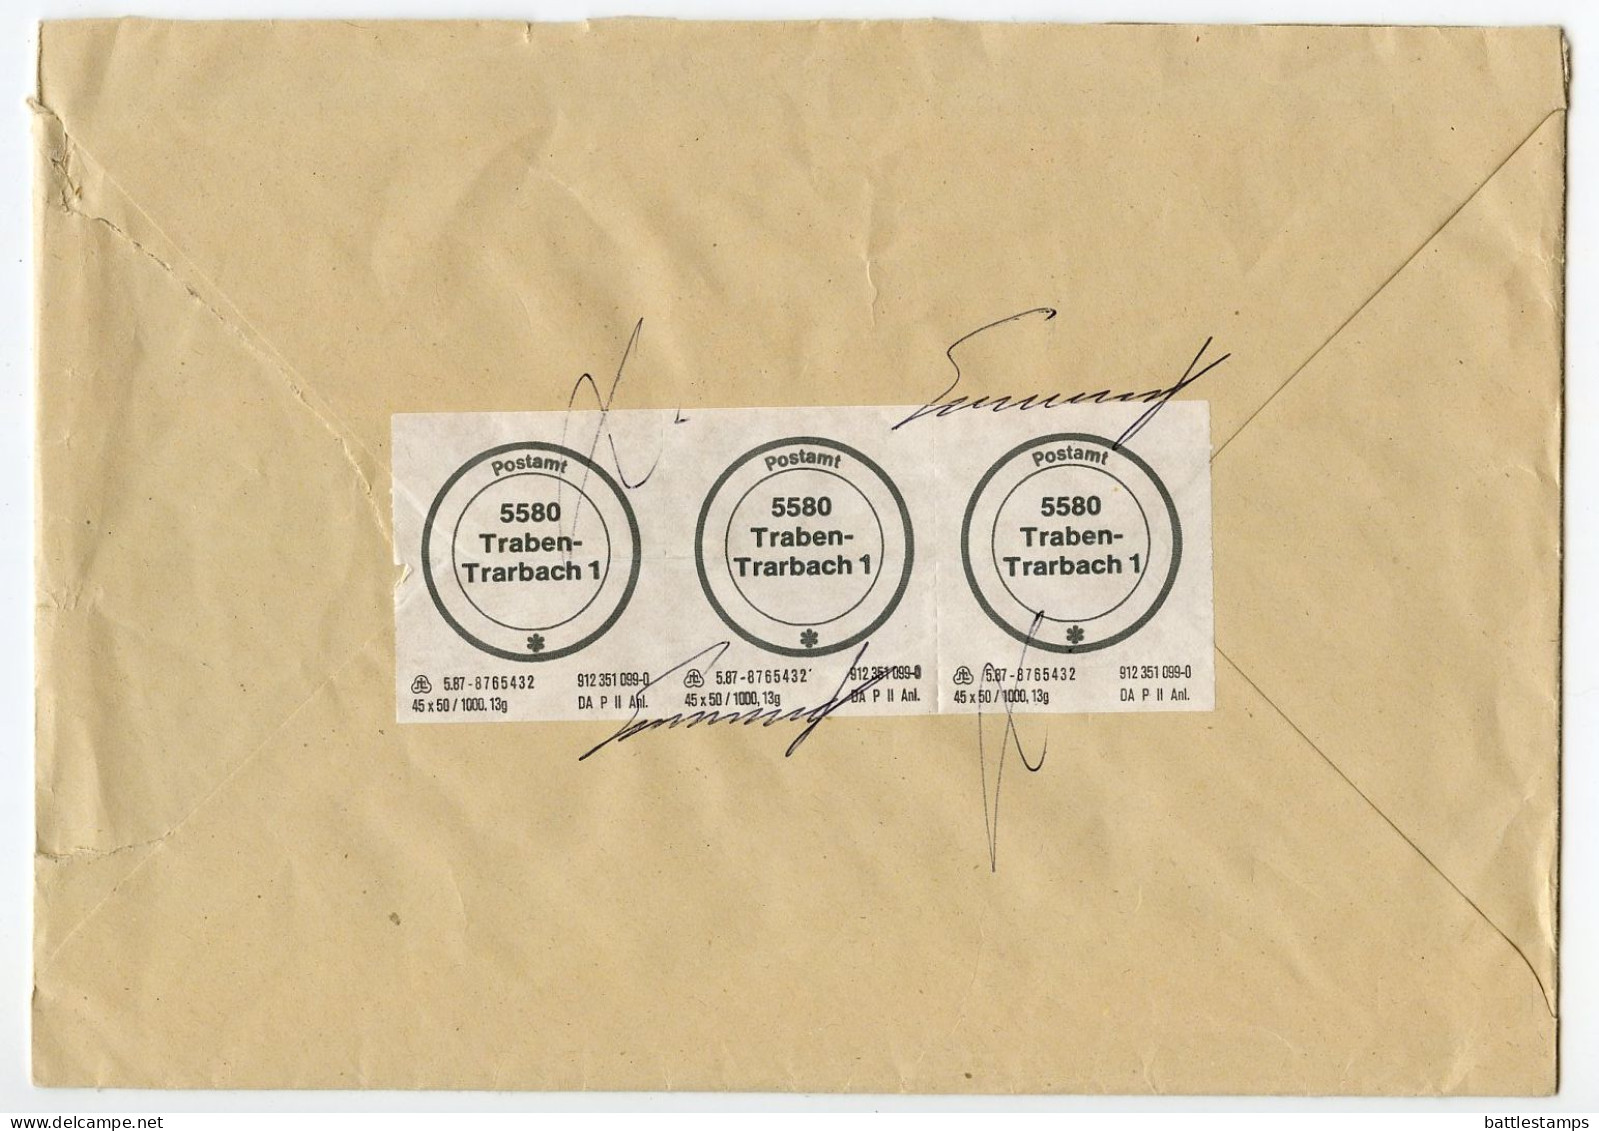 Germany 1992 Insured V-Label Postsache Cover; Traben-Trarbach To Bruttig-Fankel; Postamt (Post Office) Labels - Briefe U. Dokumente